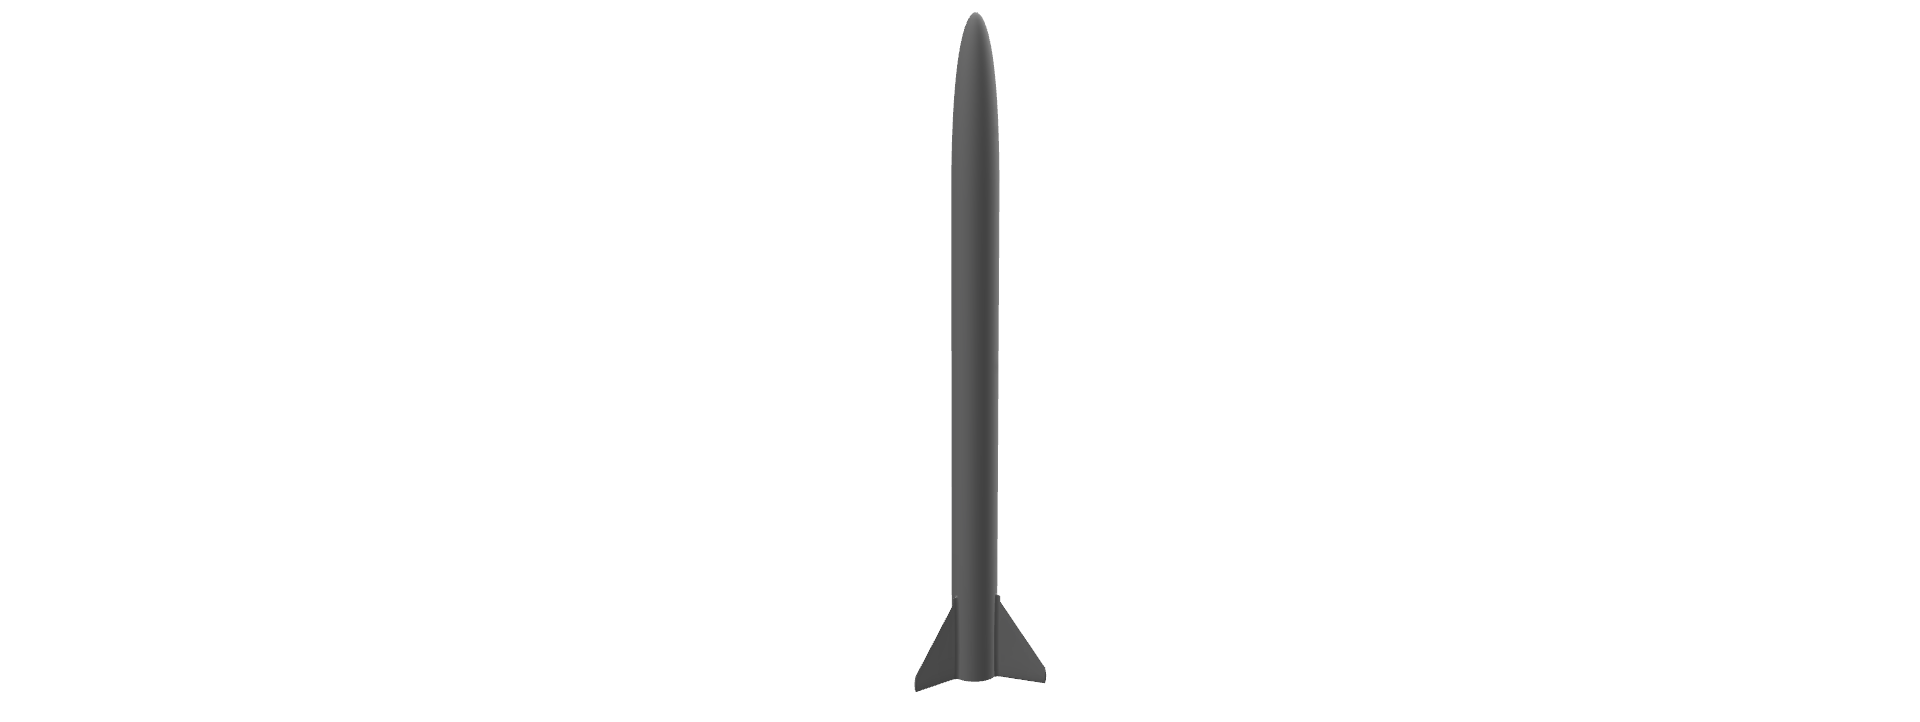 final rocket design v2.png